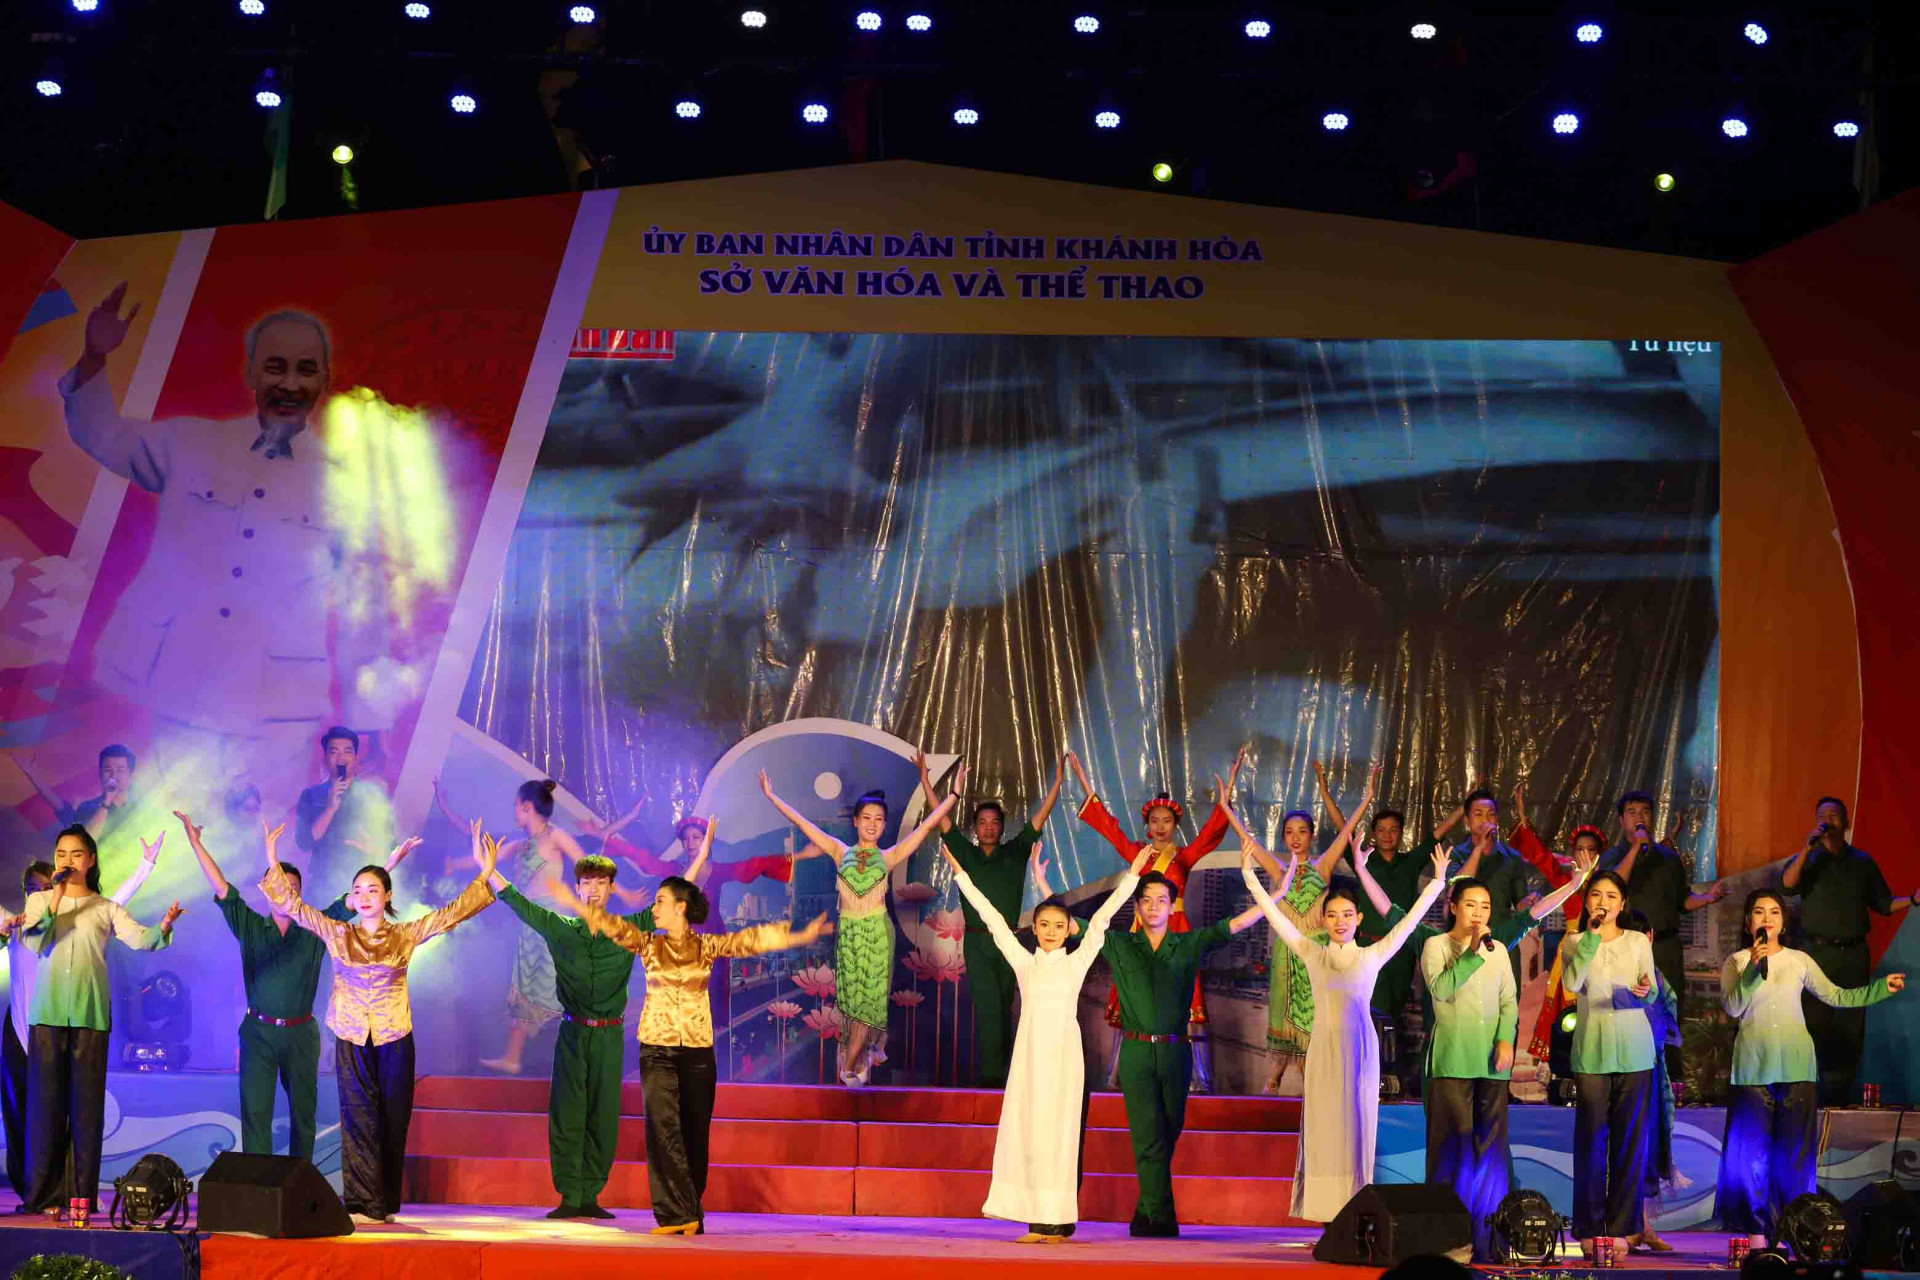 Tiết mục hát múa Hát mừng Nha Trang giải phóng mở đầu chương trình biểu diễn nghệ thuật. 